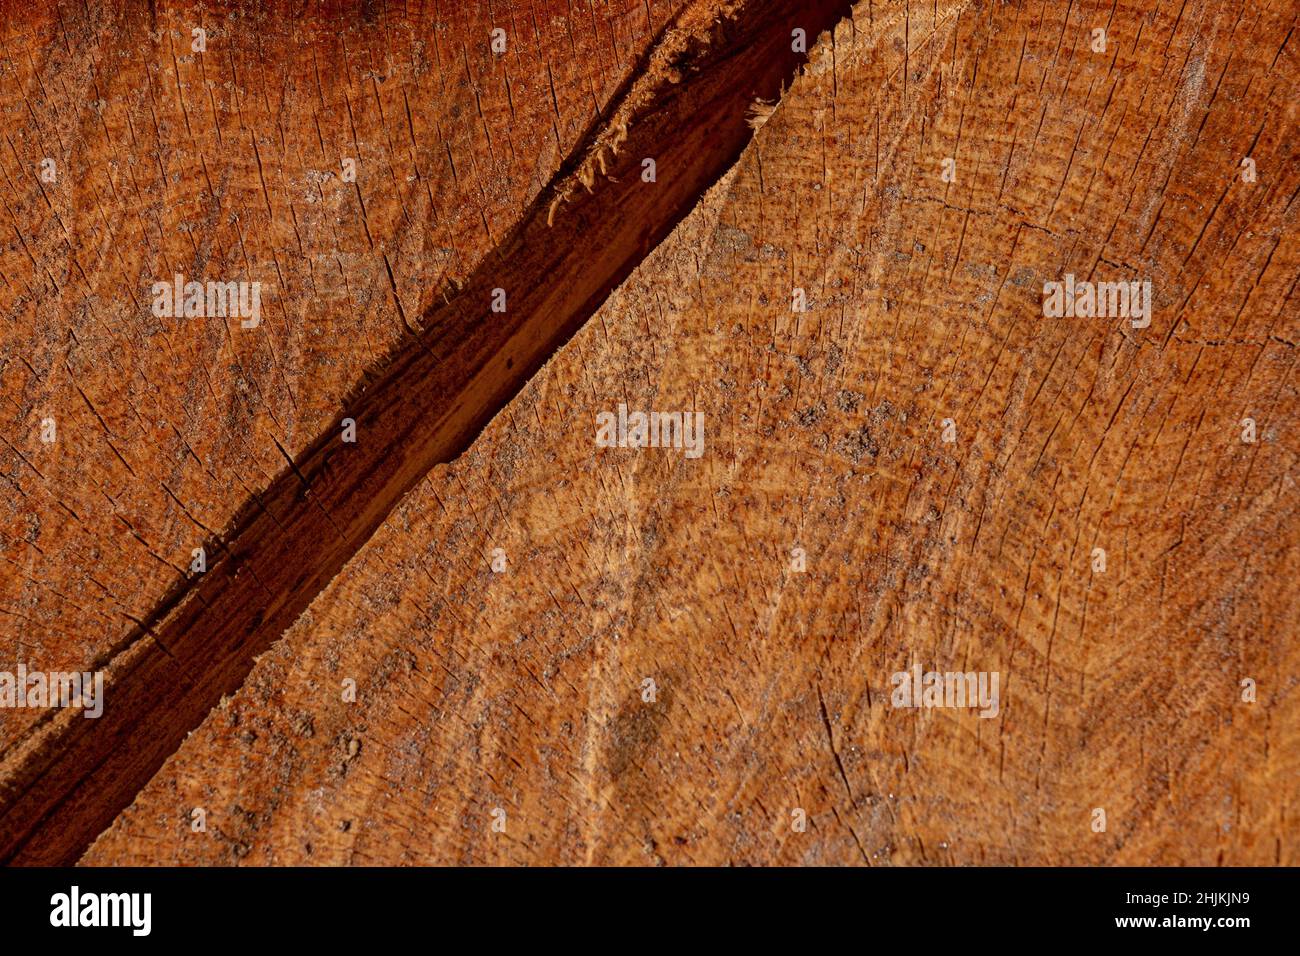 Nahaufnahme eines Kiefernstumpels mit einem Axt-Schnitt. Die Ringe und die Textur des Holzes sind sichtbar. Stockfoto